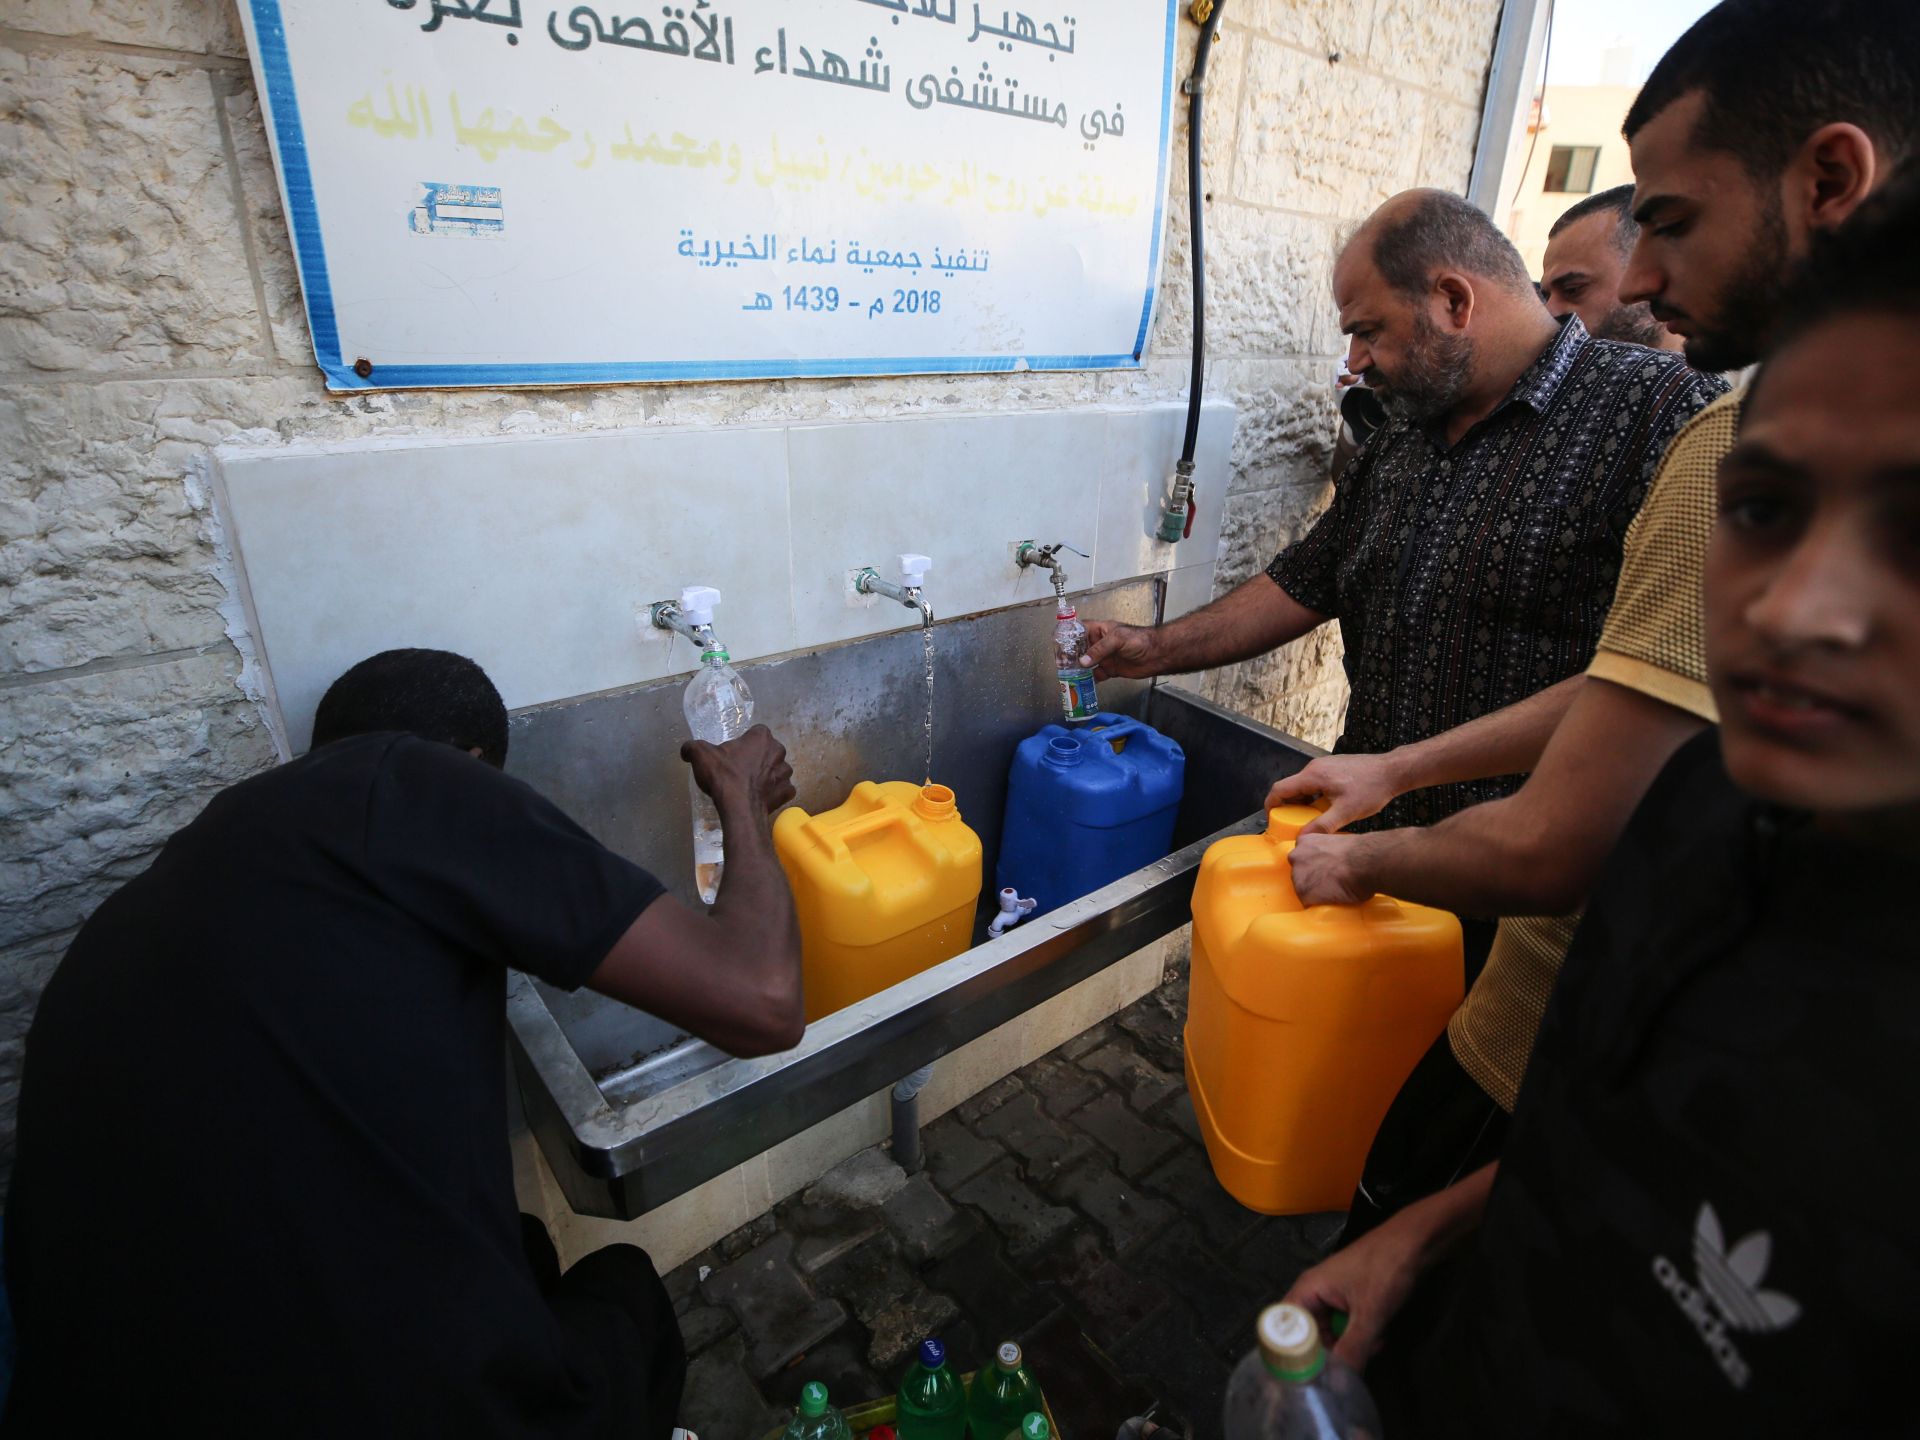 “دبلوماسية المياه الجوفية” بغزة.. “يوتوبيا” علمية حطّمتها الحرب | علوم – البوكس نيوز